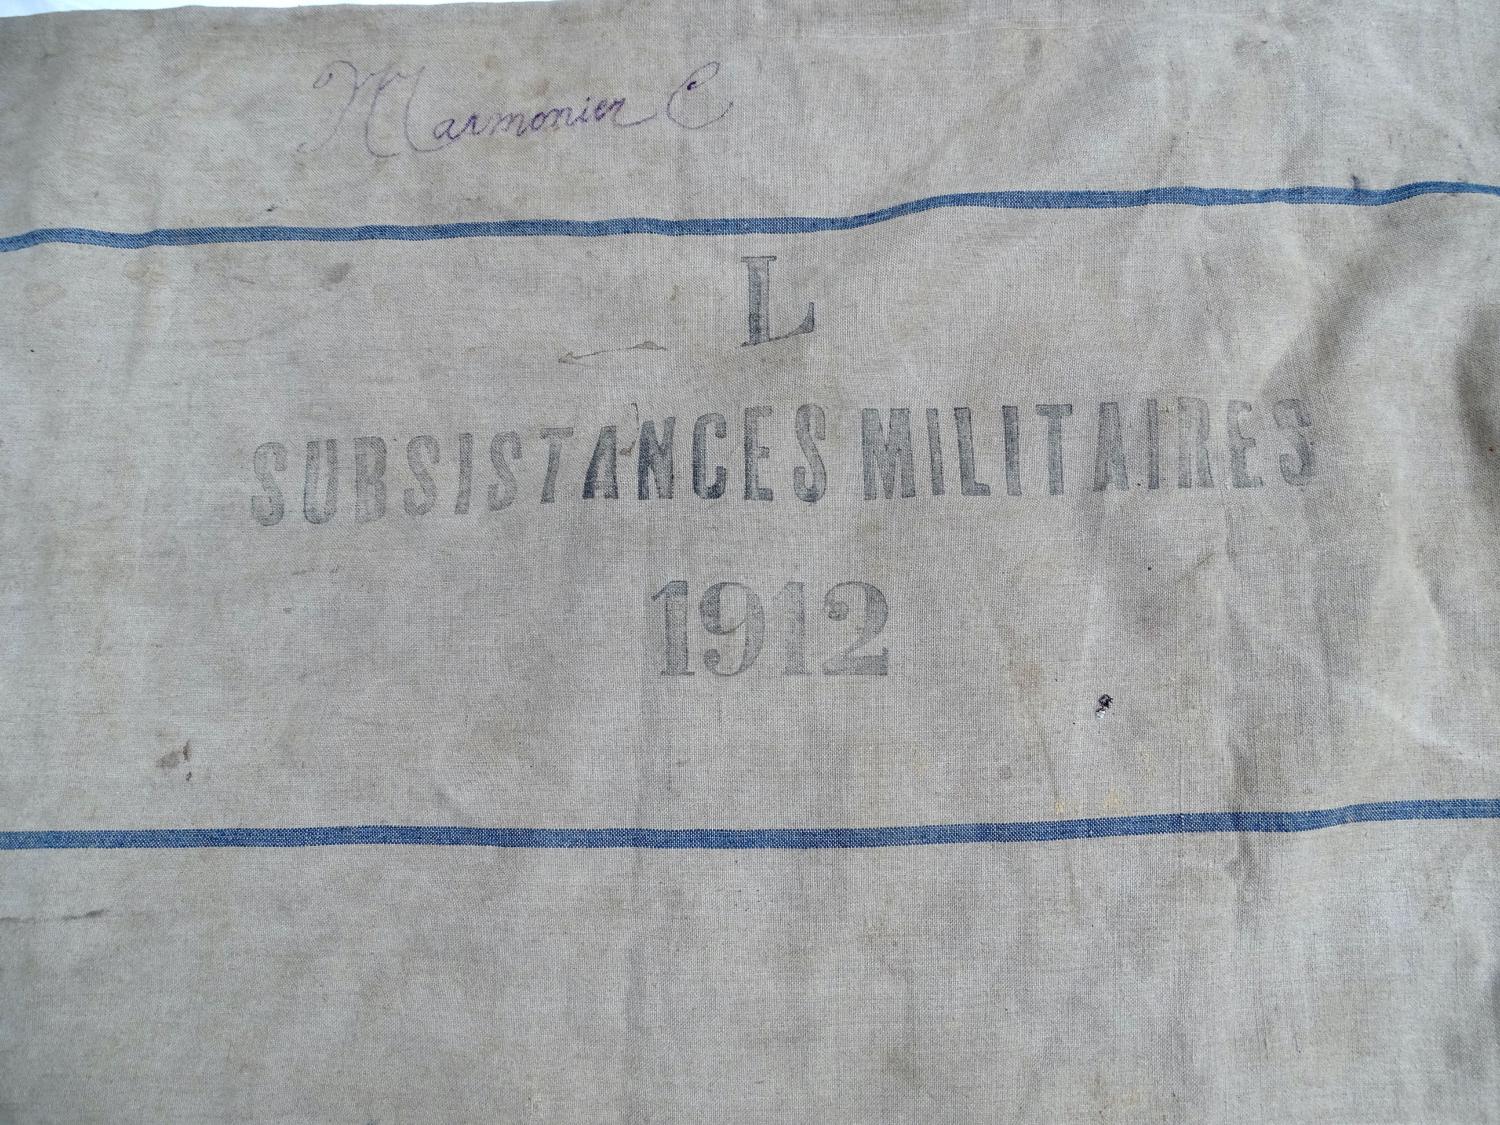 Grand sac des Subsistances Militaires dat&eacute; 1912